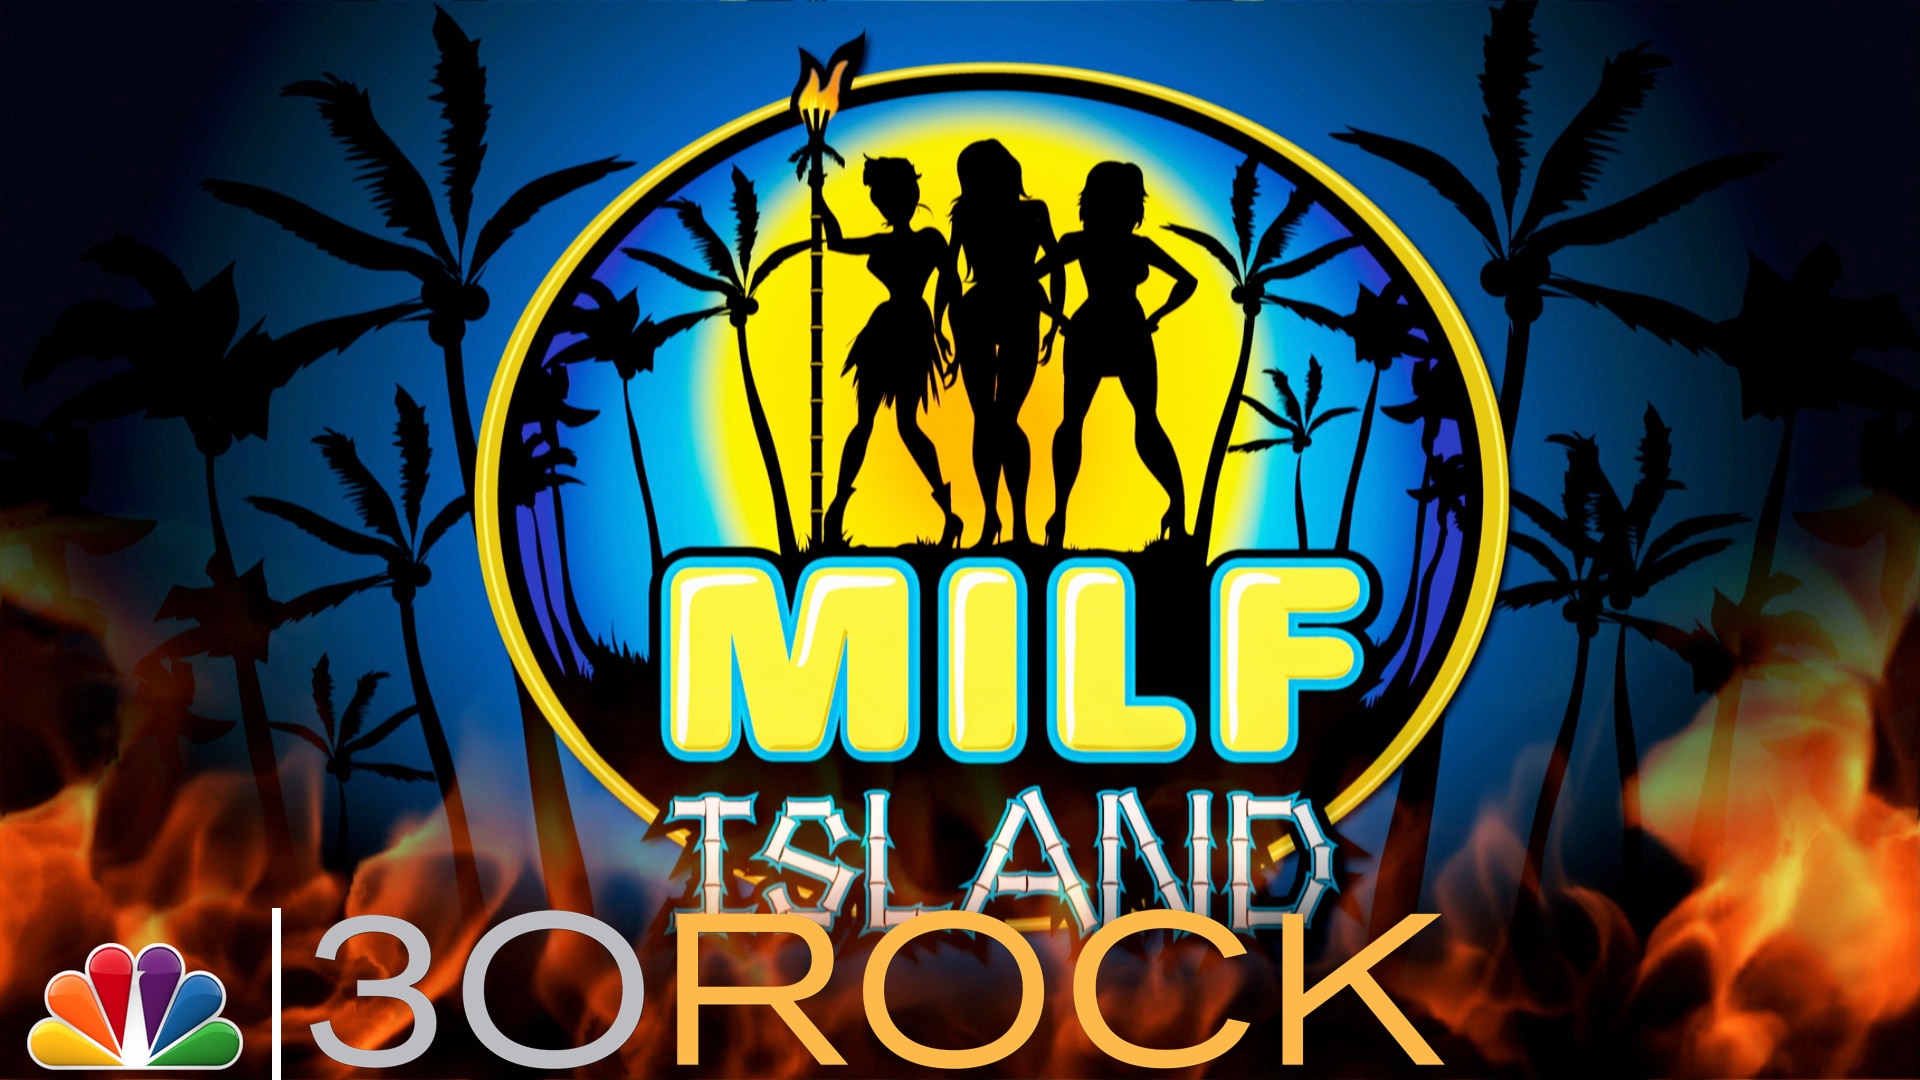 1920px x 1080px - Watch 30 Rock Web Exclusive: MILF Island - NBC.com